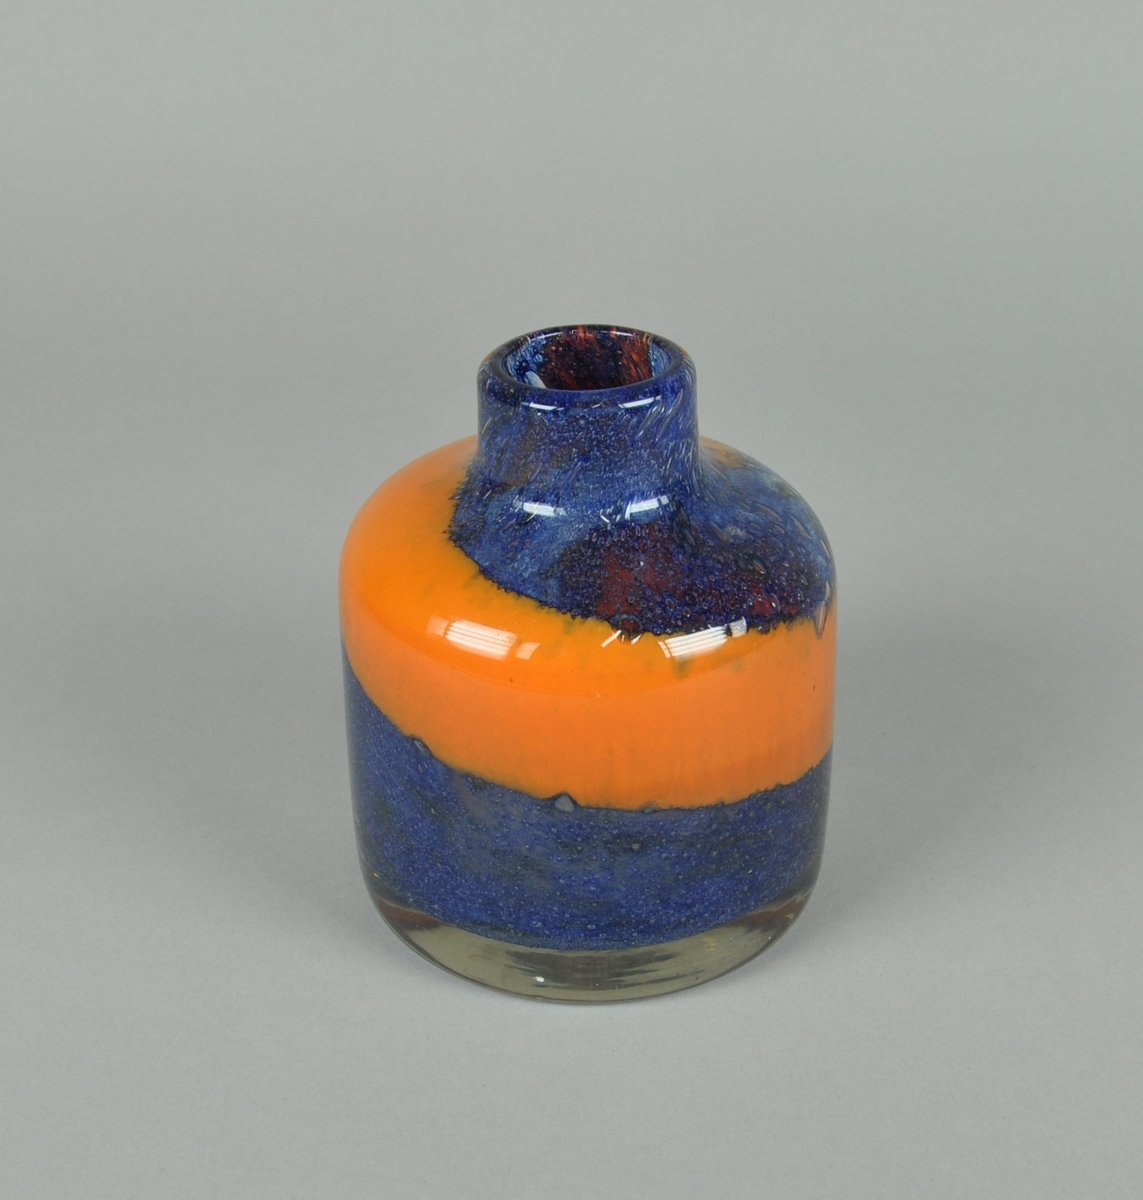 Munnblåst vase av glass. Rund sylindrisk form med lav hals. Vasen har spiralisert dekor i fargene oransje og blått.